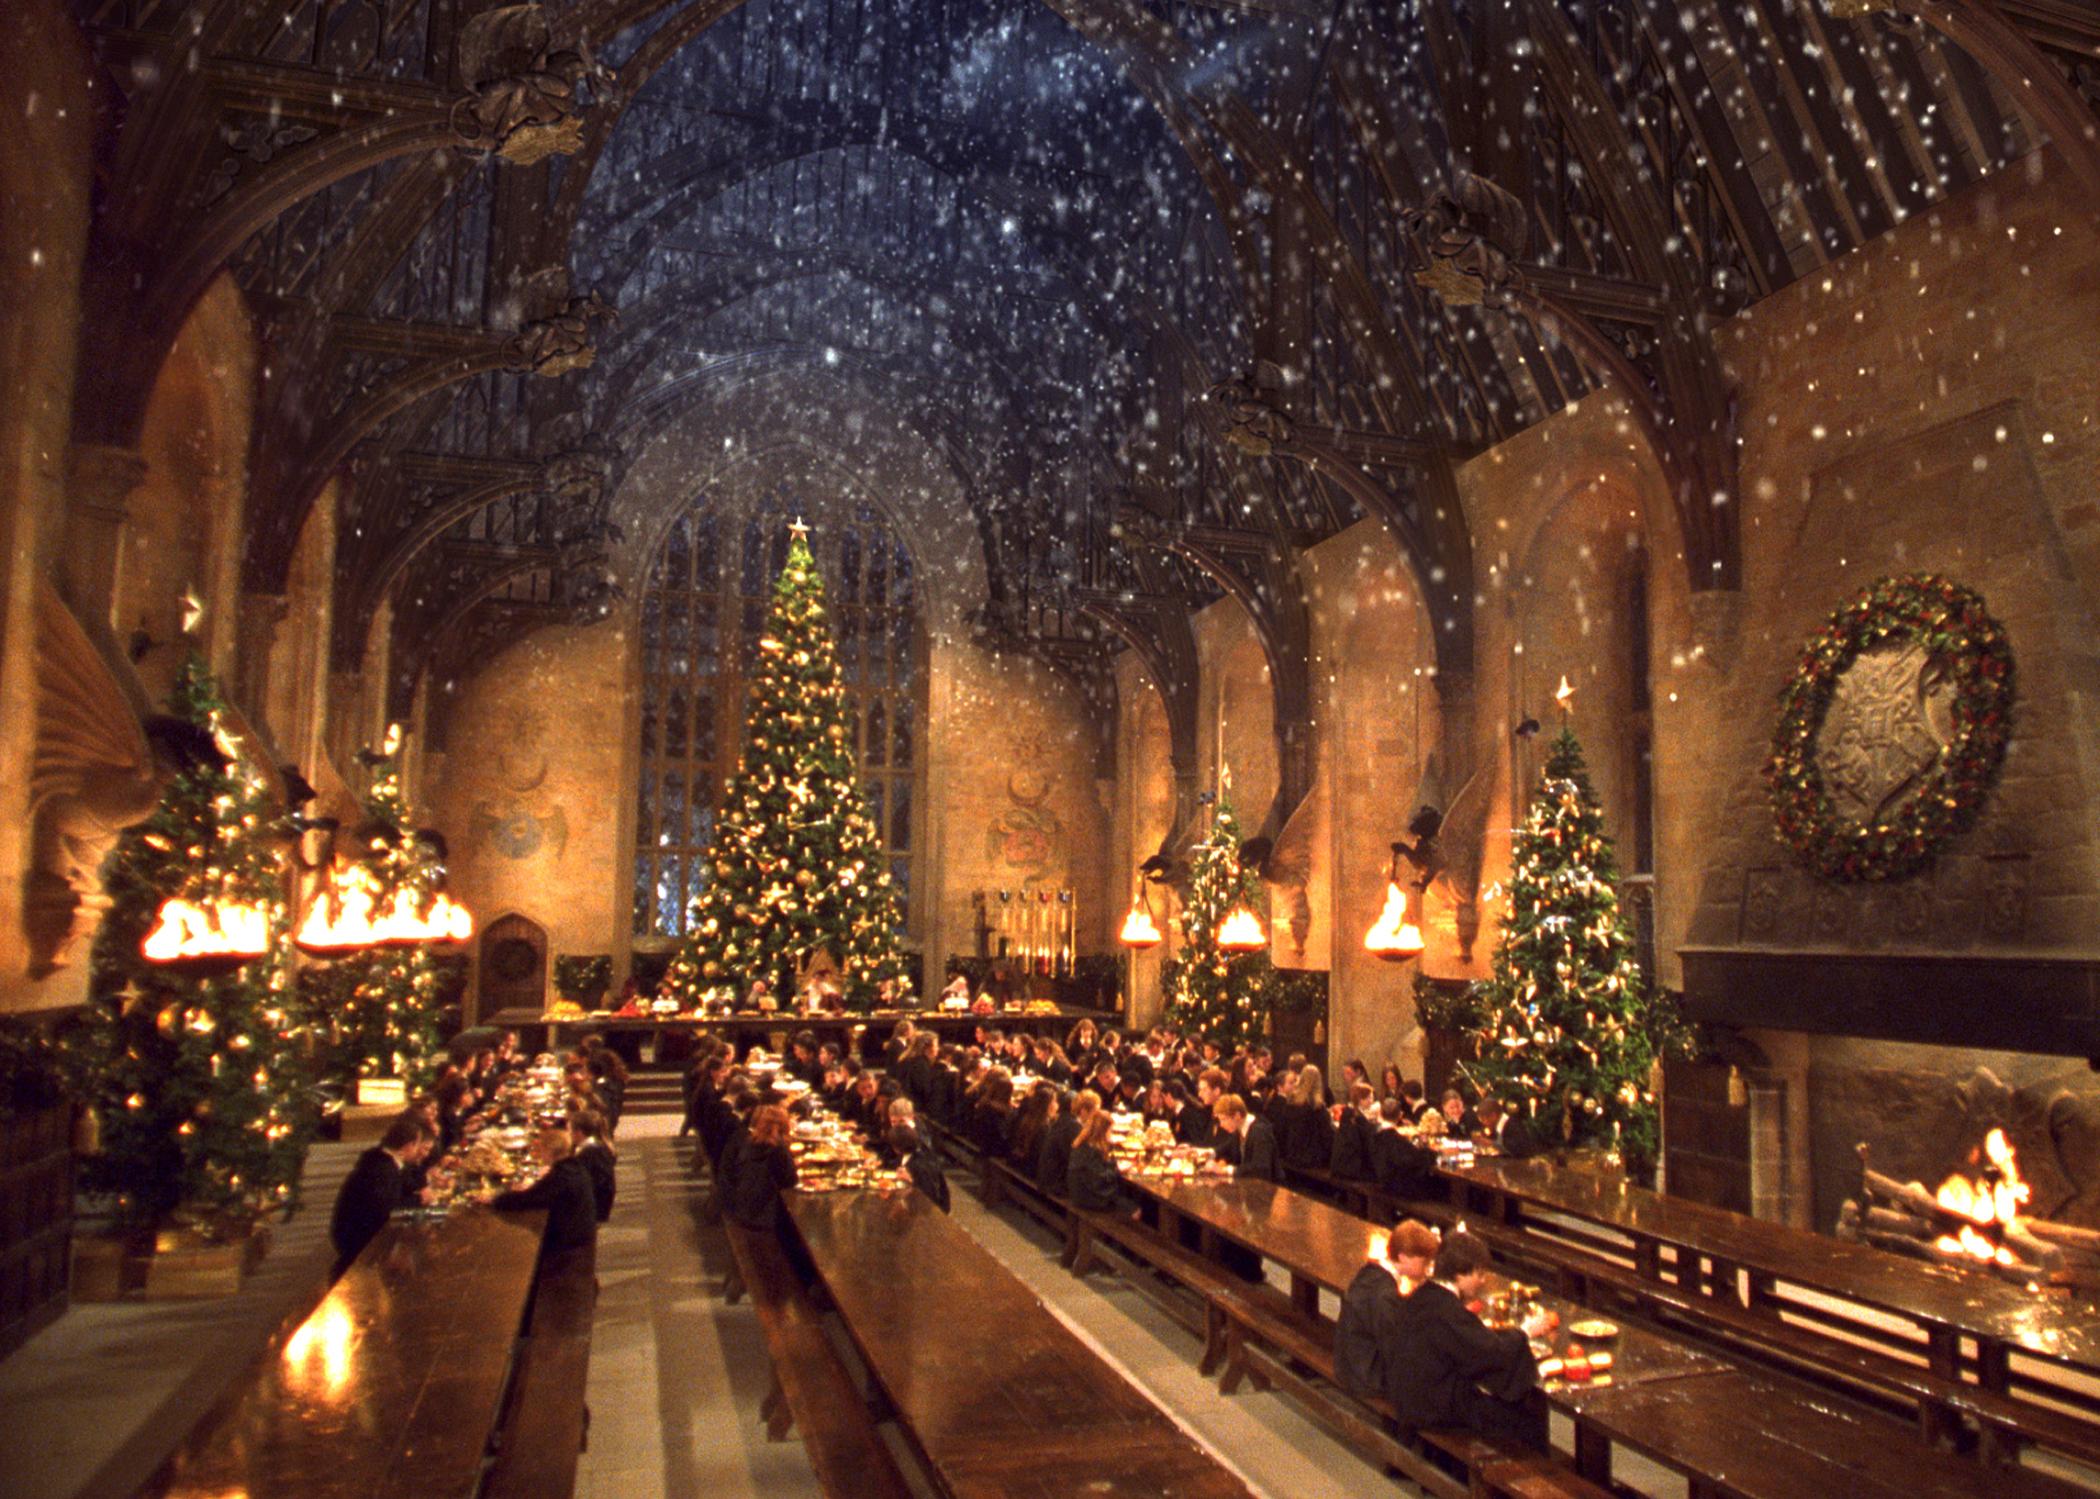 hội trường lớn trường Phù thủy Hogwarts trong đêm Giáng sinh với trần nhà lung linh ánh đèn - bối cảnh chính để viết về bộ phim Harry Potter bằng tiếng Anh